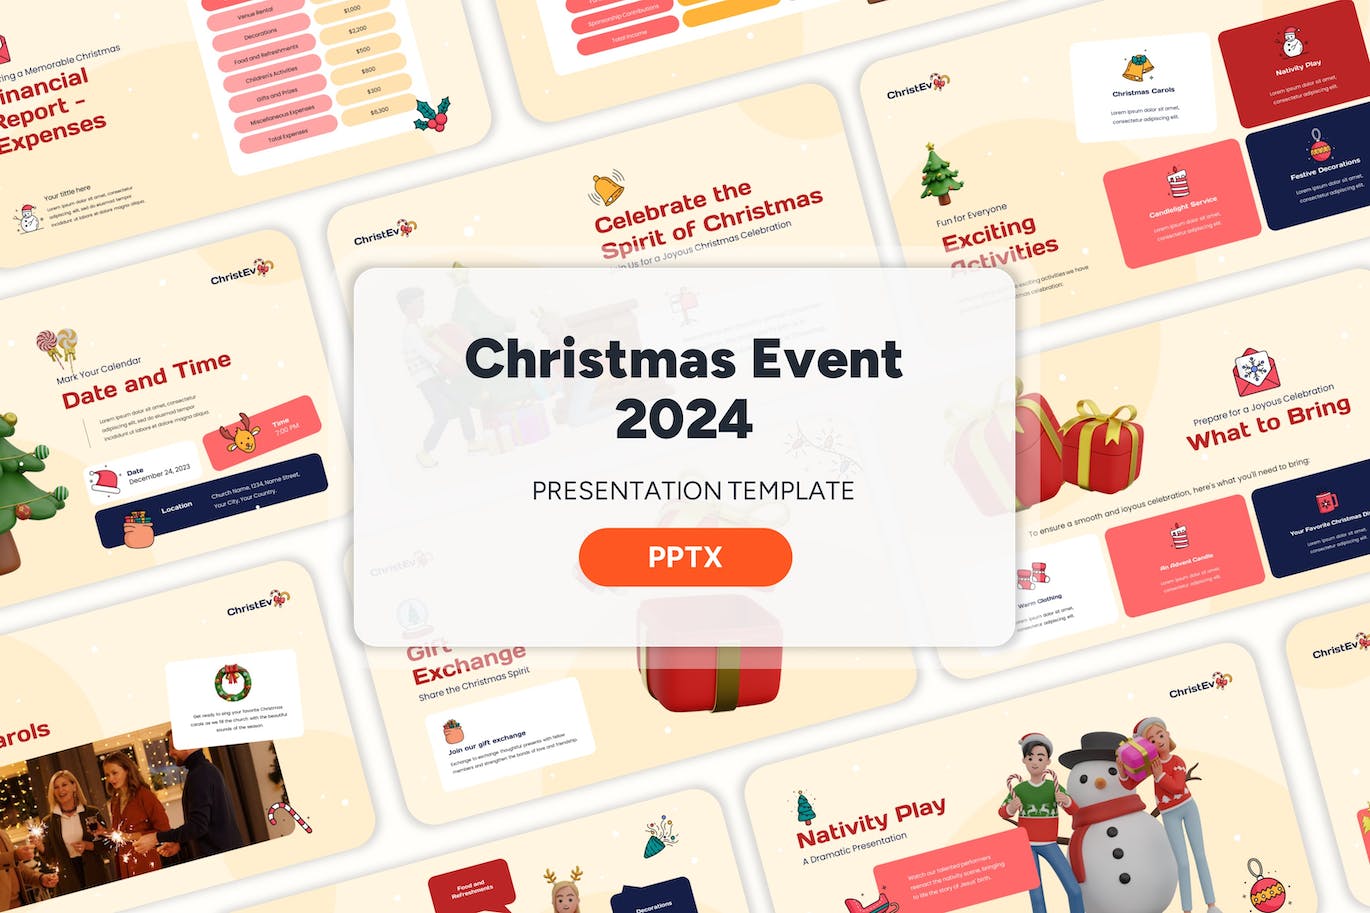 2024 年圣诞节活动  PPT模版 (PPTX)